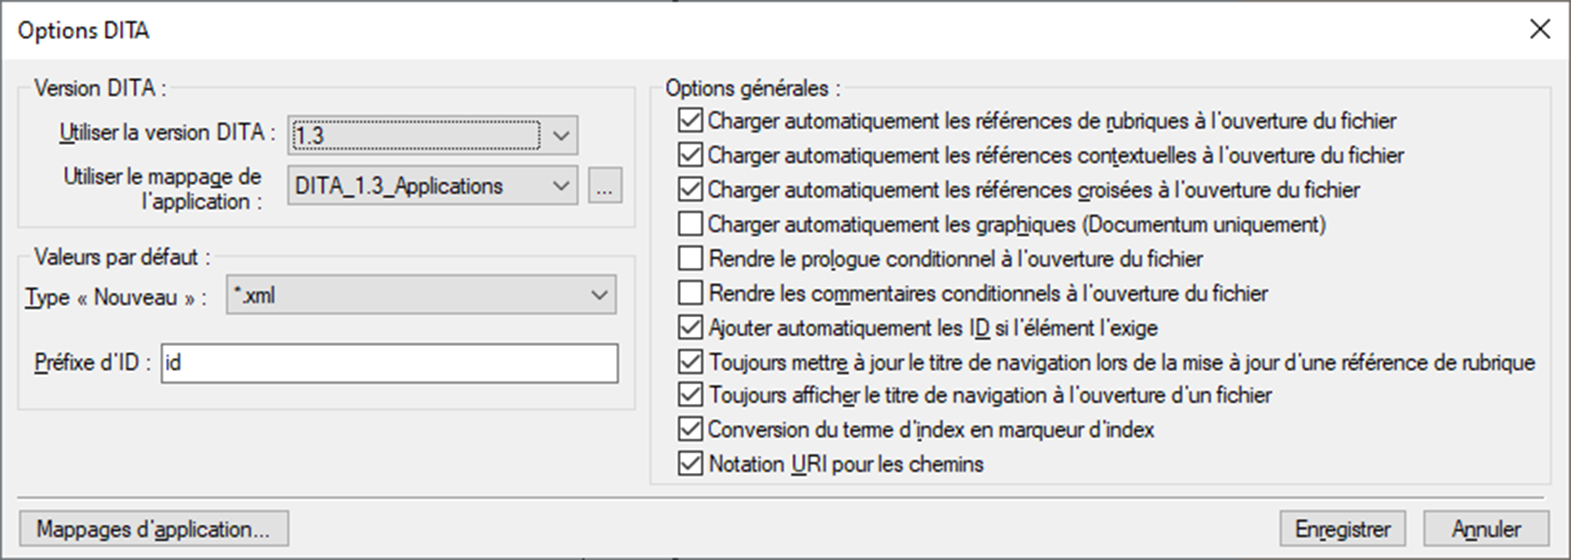 Configuration des options dans la boîte de dialogue Options DITA de FrameMaker